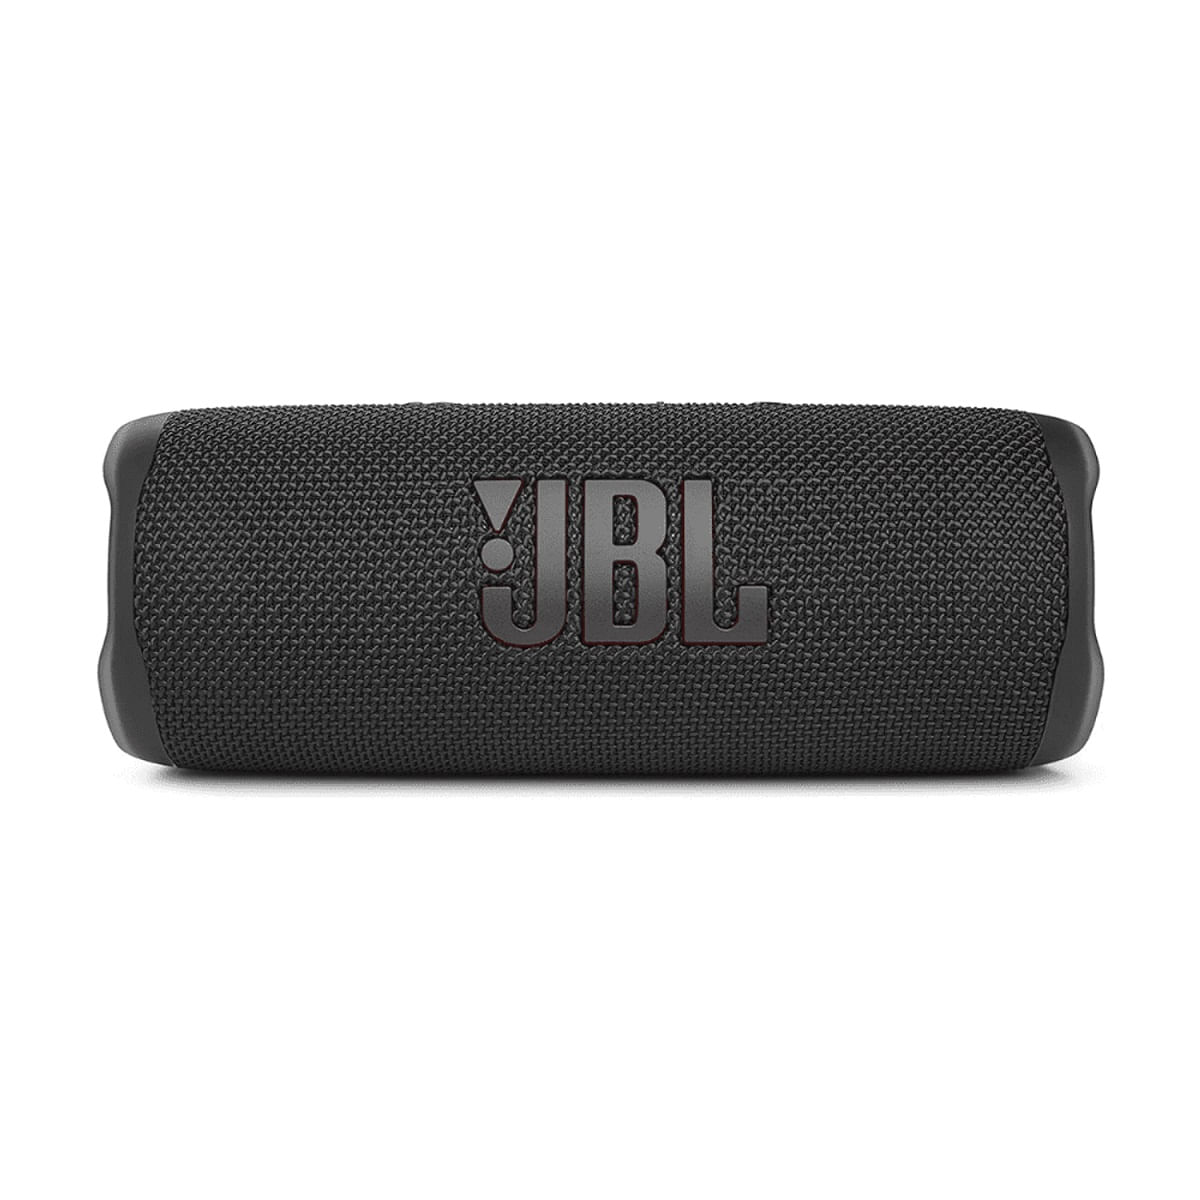 Parlante JBL Flip 6 Bluetooth IP67 Waterproof - Negro